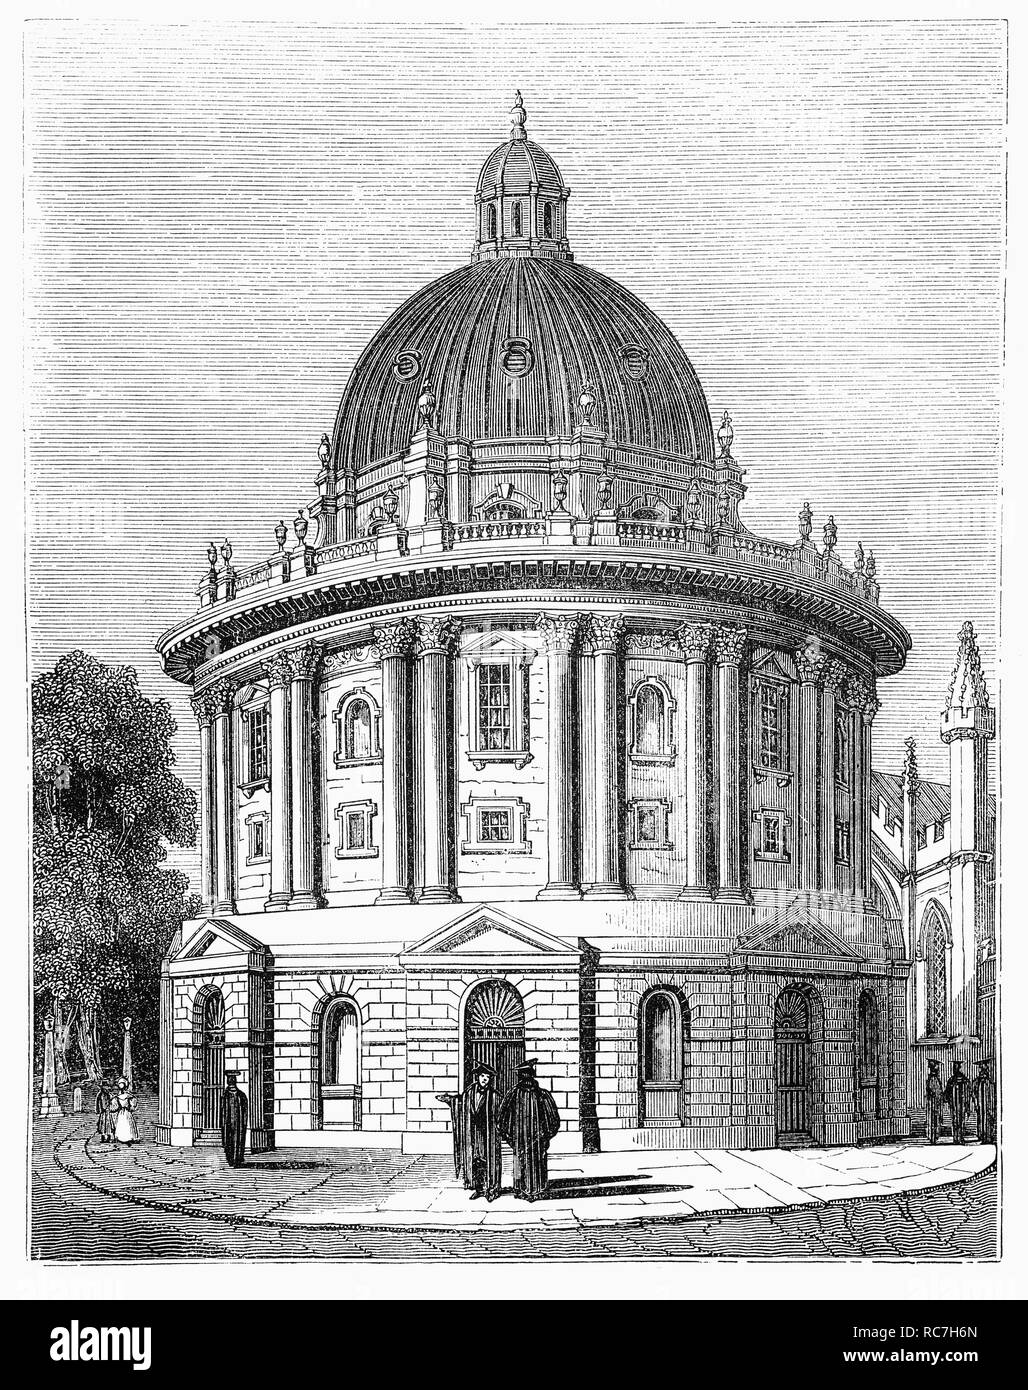 Die radcliffe Bibliothek für Forschung und Wissenschaft in der Stadt Oxford, England wurde im Jahr 1901 neben der Oxford University Museum of Natural History und benannt nach John Radcliffe, Arzt, Wissenschaftler, Politiker und ein großer Wohltäter der Universität eröffnet. Stockfoto